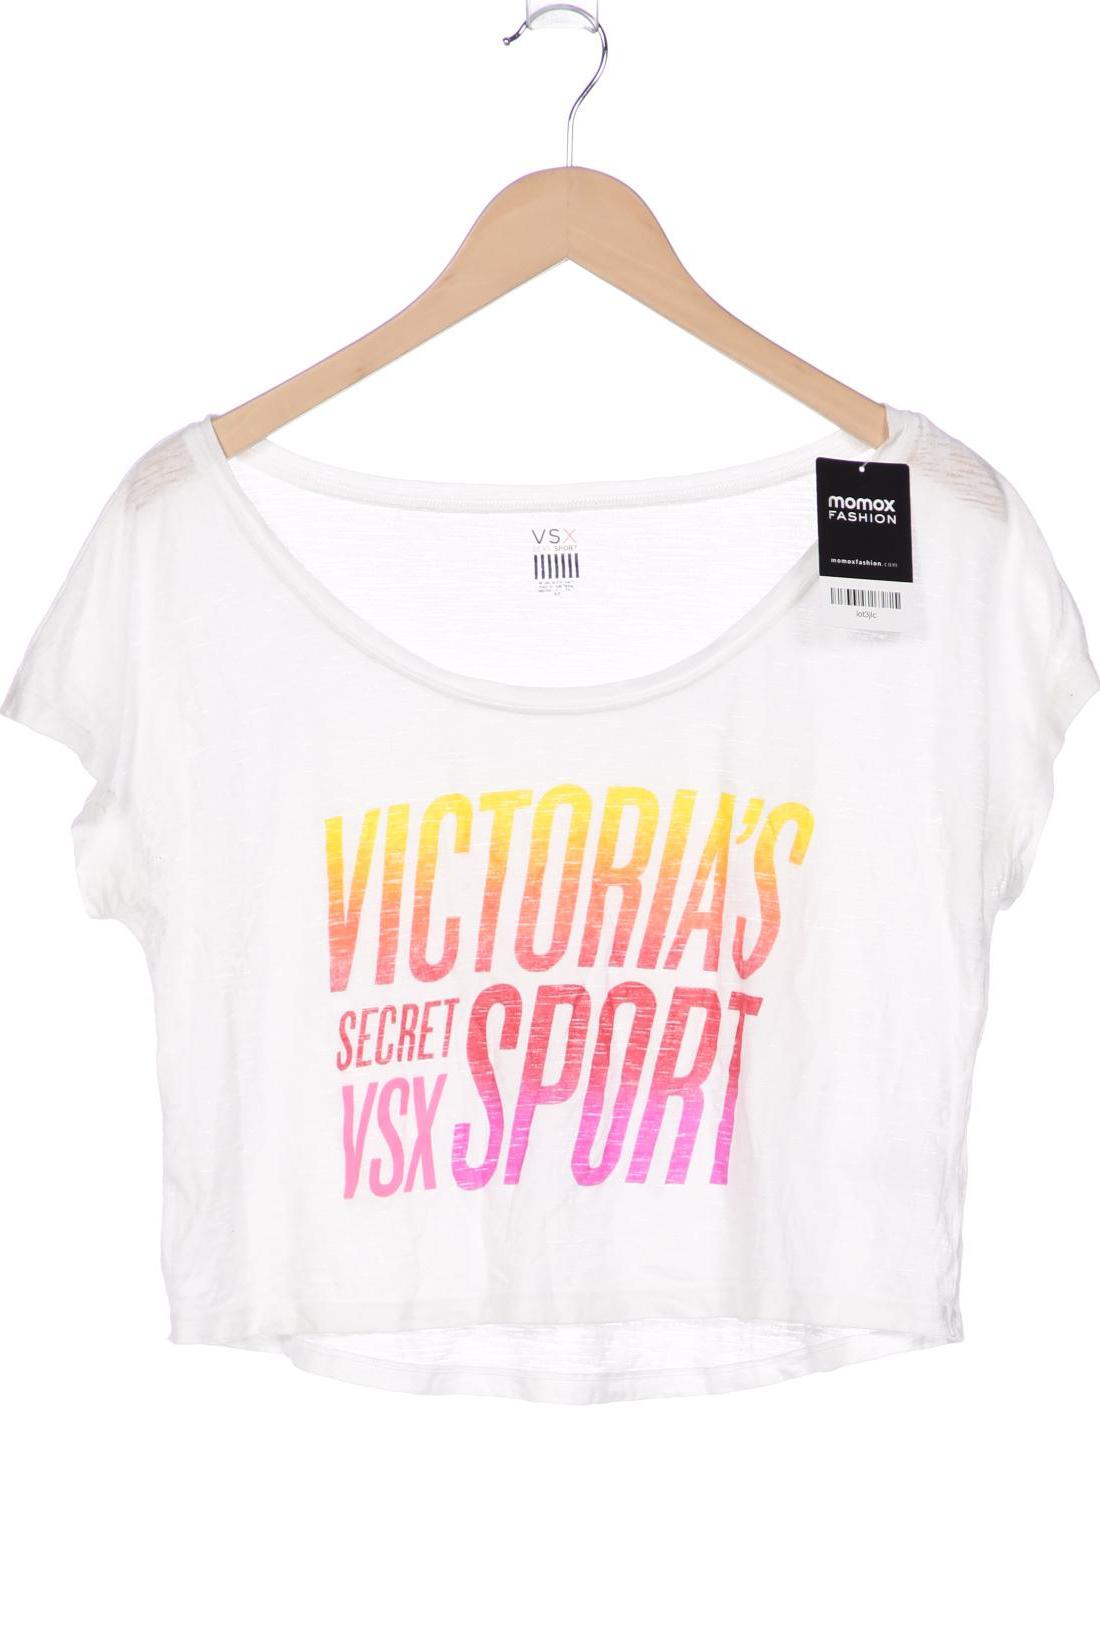 Victorias Secret Damen T-Shirt, weiß von Victoria's Secret